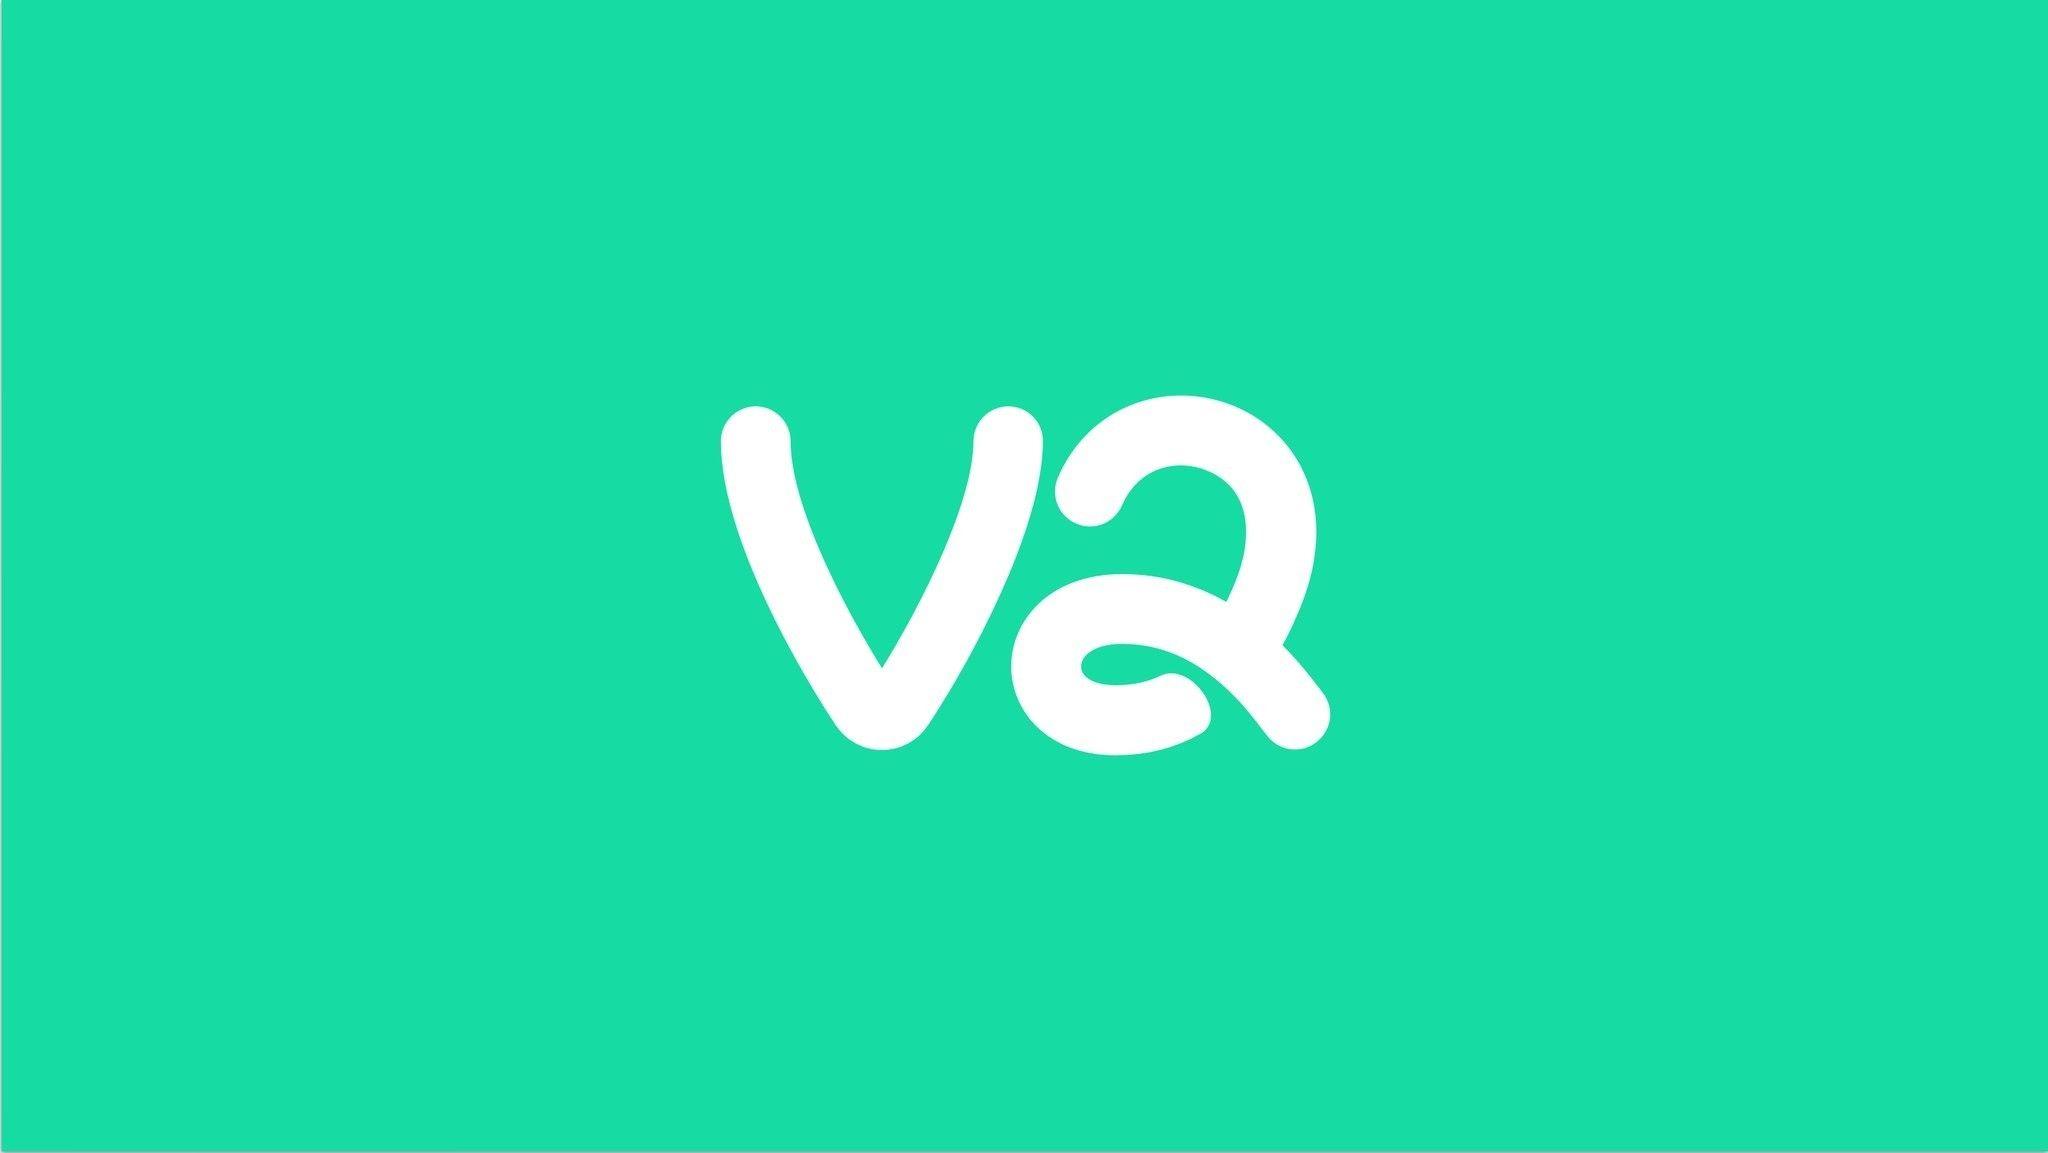 Vine Logo - Vine could be making a comeback, co-founder tweets familiar logo ...